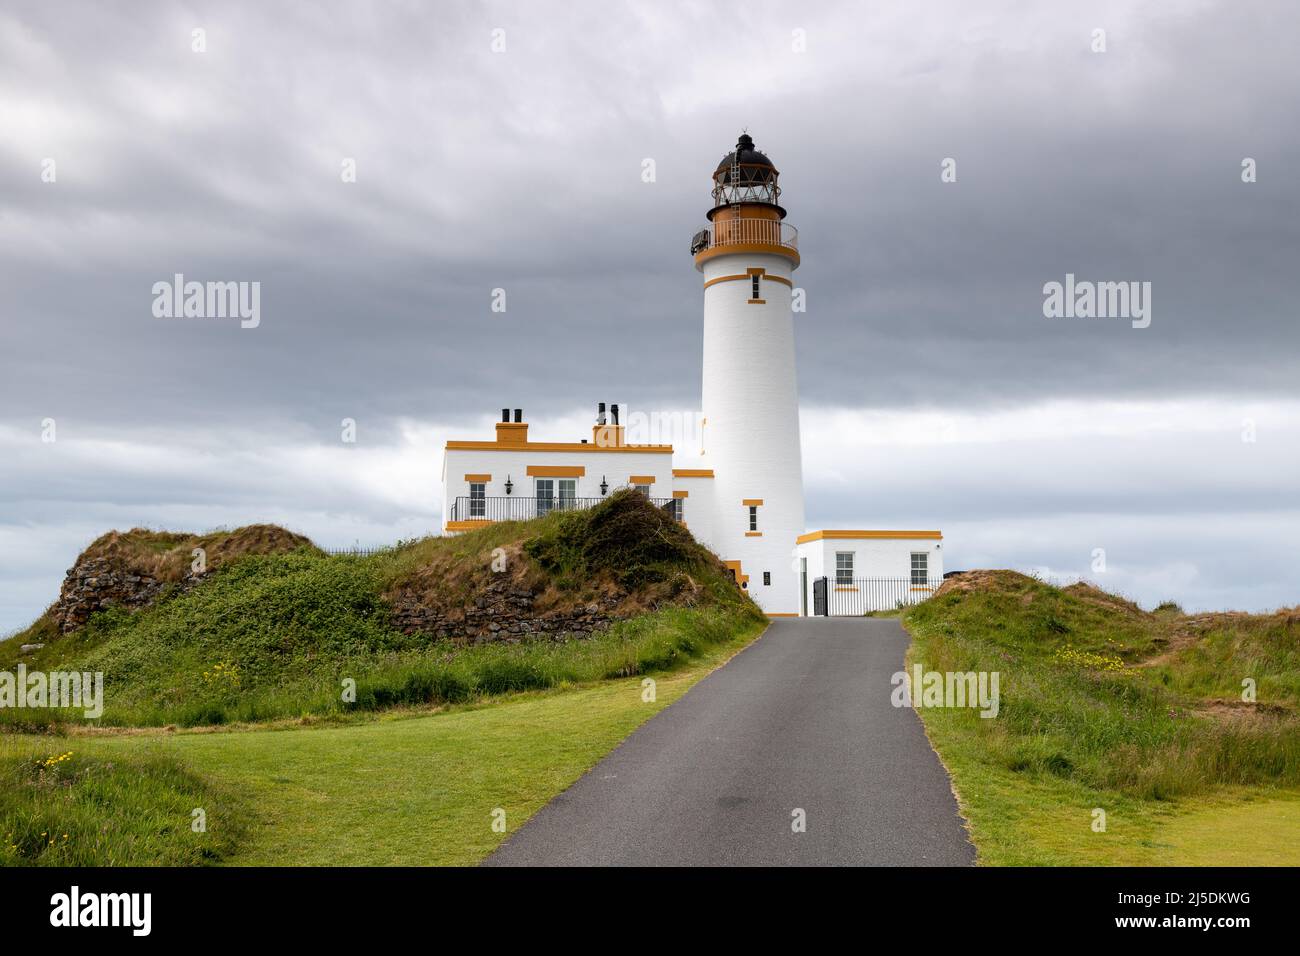 Turnberry lighthouse on the Ayrshire coast, Scotland Stock Photo